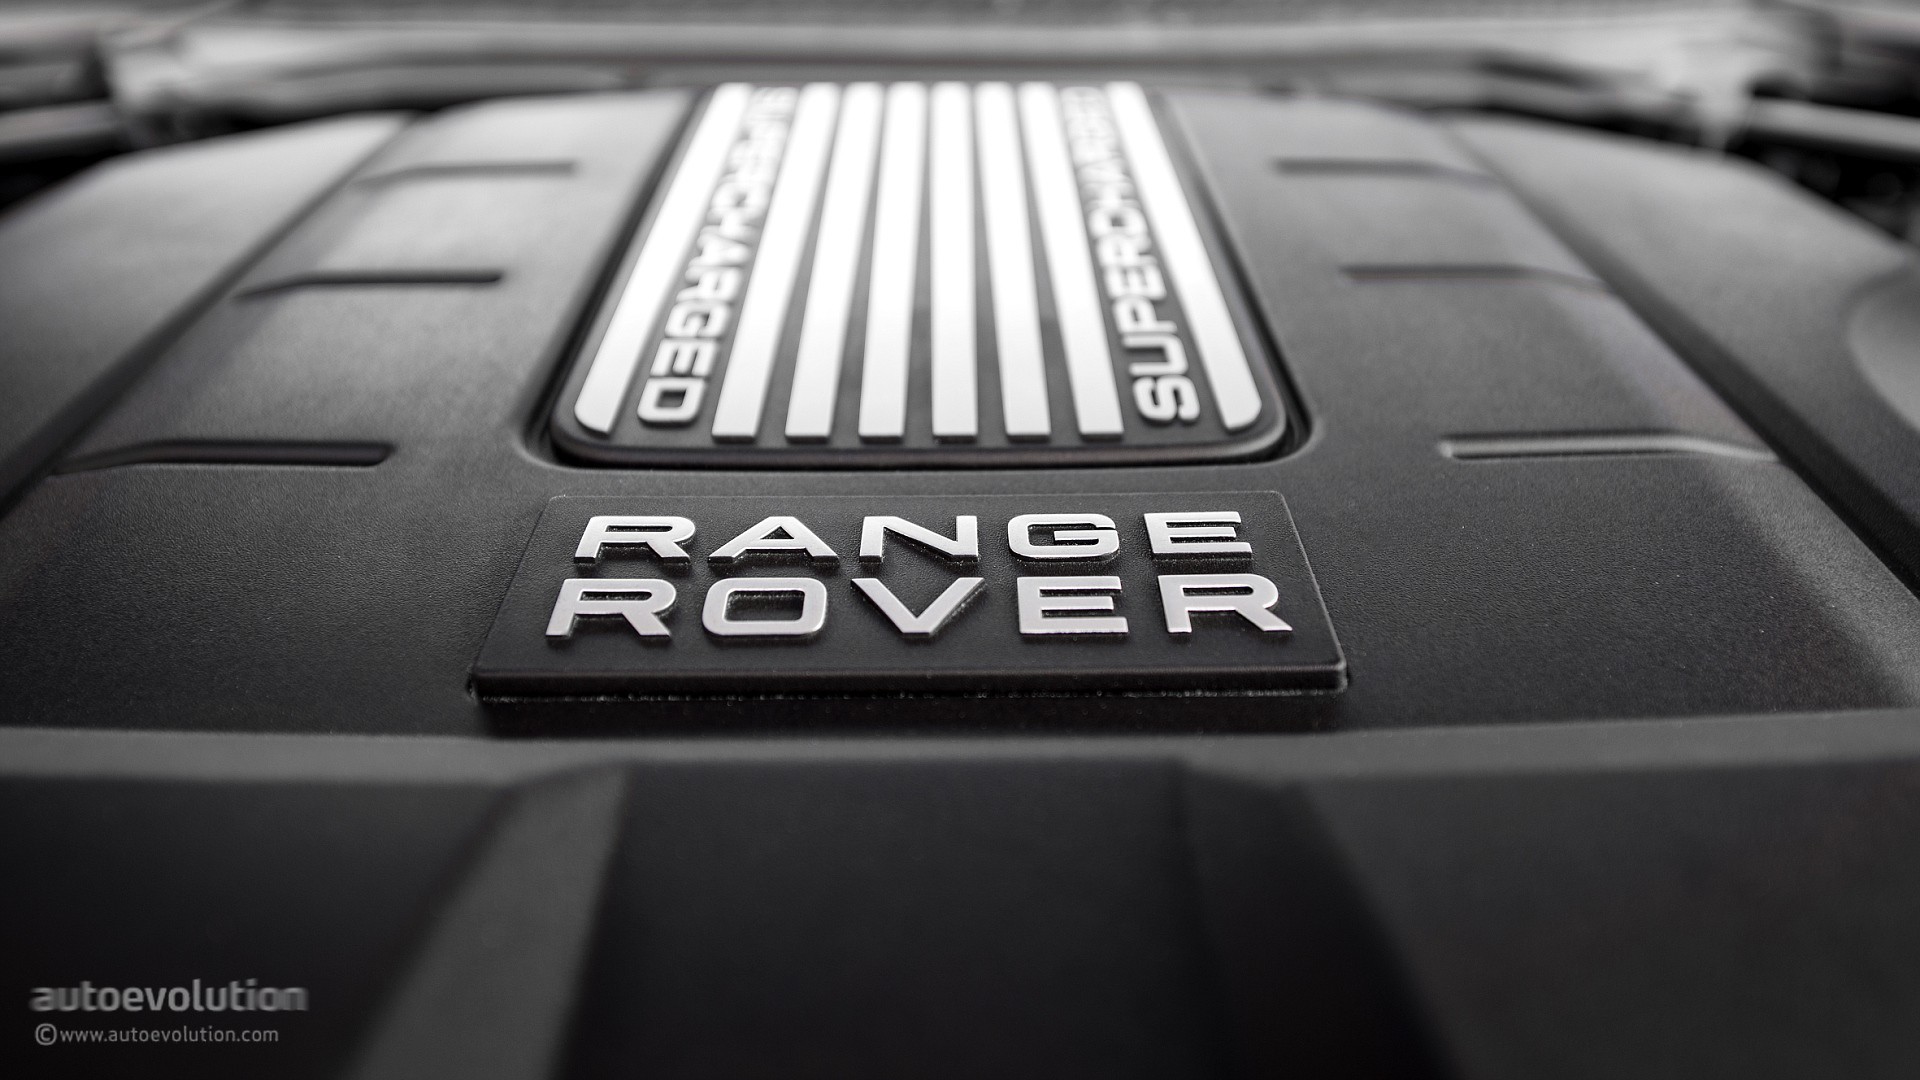 1920x1080 Range Rover Sport Wallpaper Range Rover Cars Wallpapers in jpg | Art  Wallpapers | Pinterest | Range rover car, Range rovers and Range rover sport